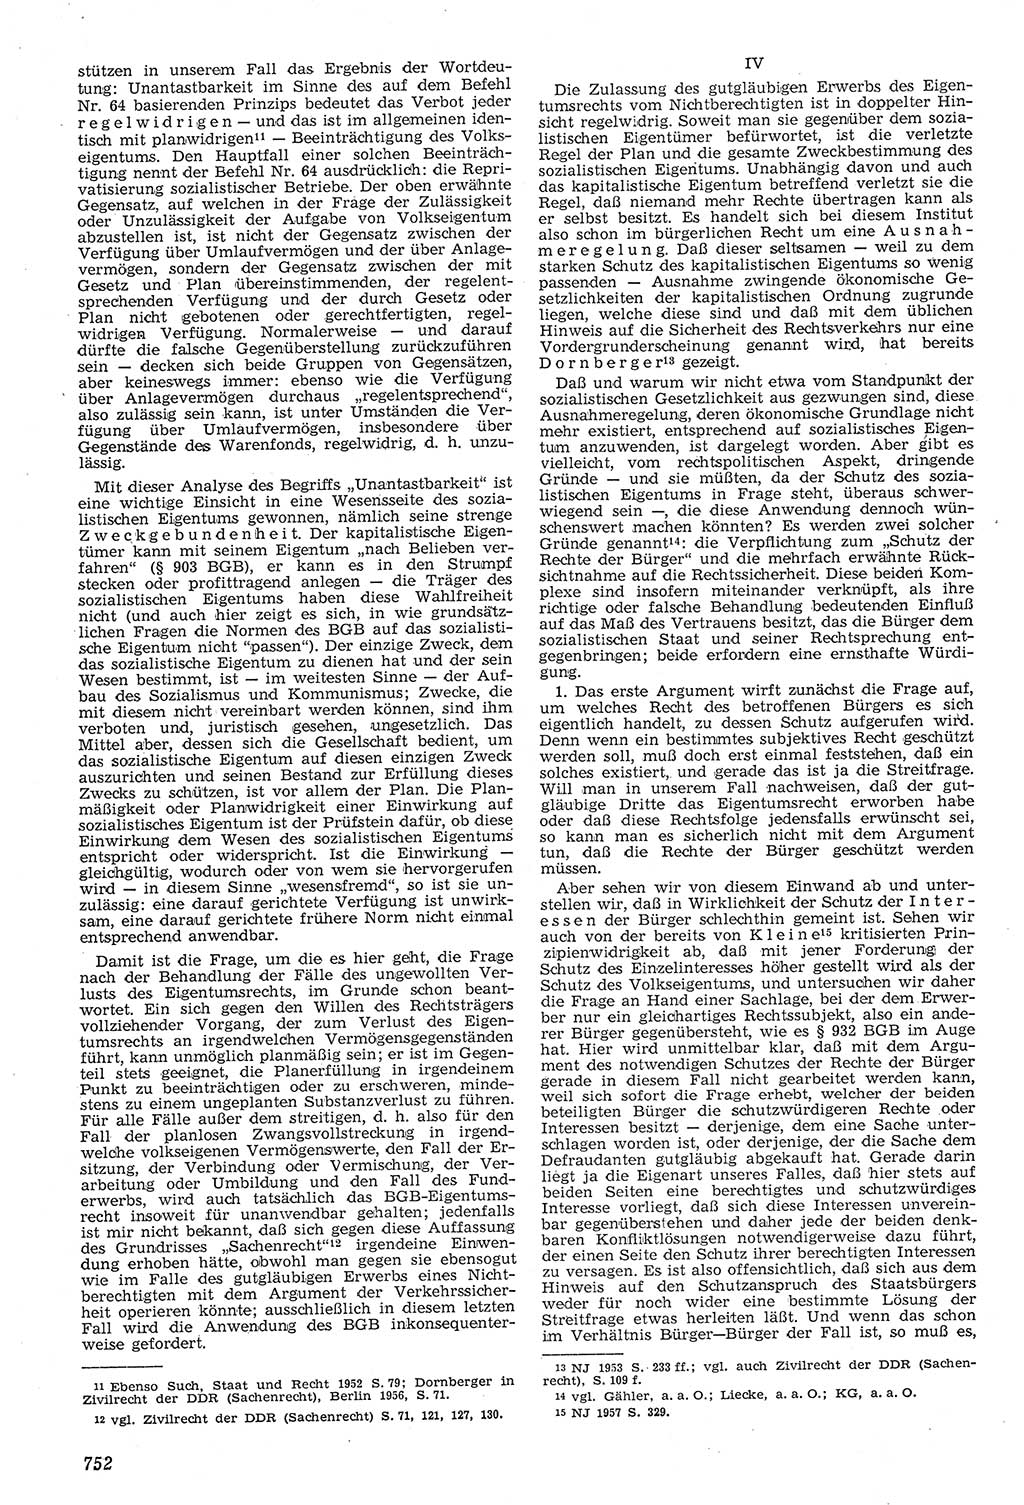 Neue Justiz (NJ), Zeitschrift für Recht und Rechtswissenschaft [Deutsche Demokratische Republik (DDR)], 11. Jahrgang 1957, Seite 752 (NJ DDR 1957, S. 752)